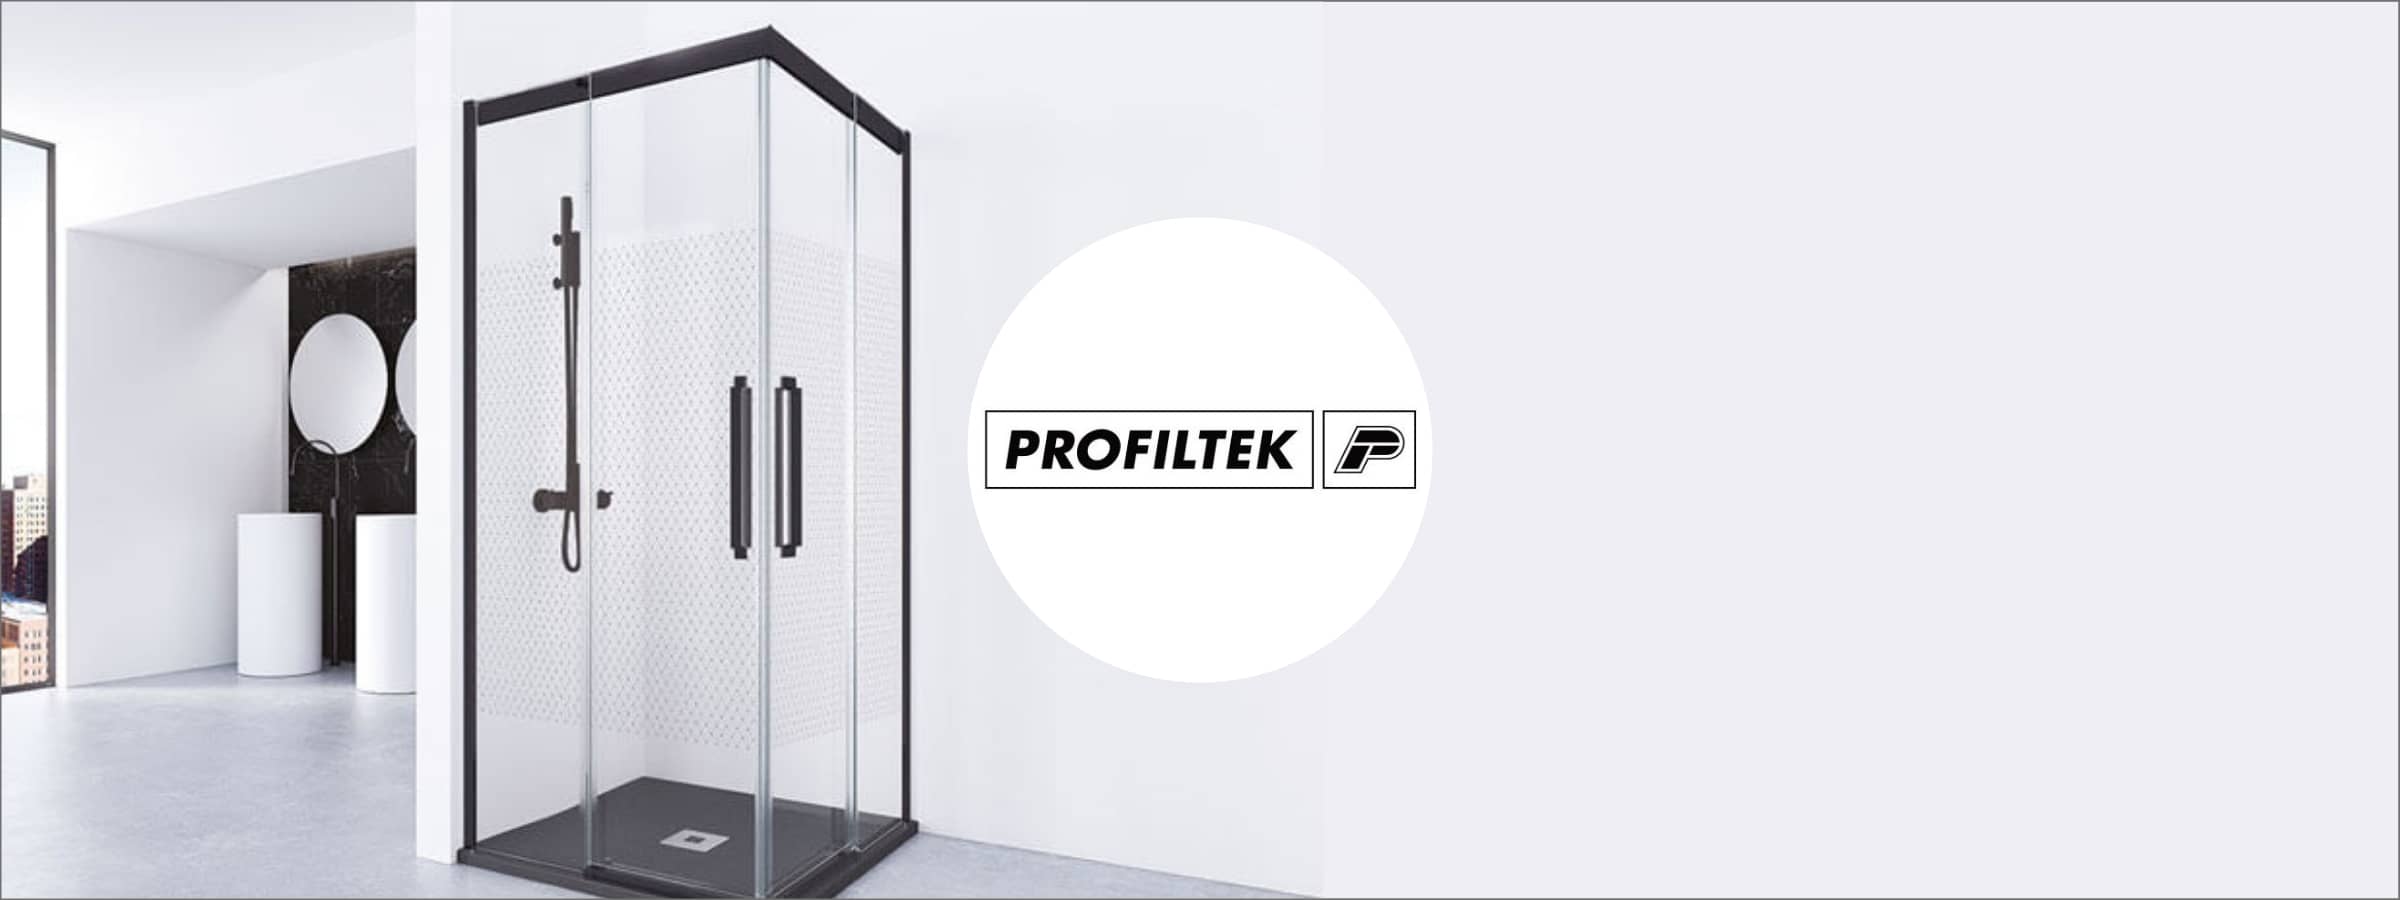 Colecciones y productos de la marca - Profiltek